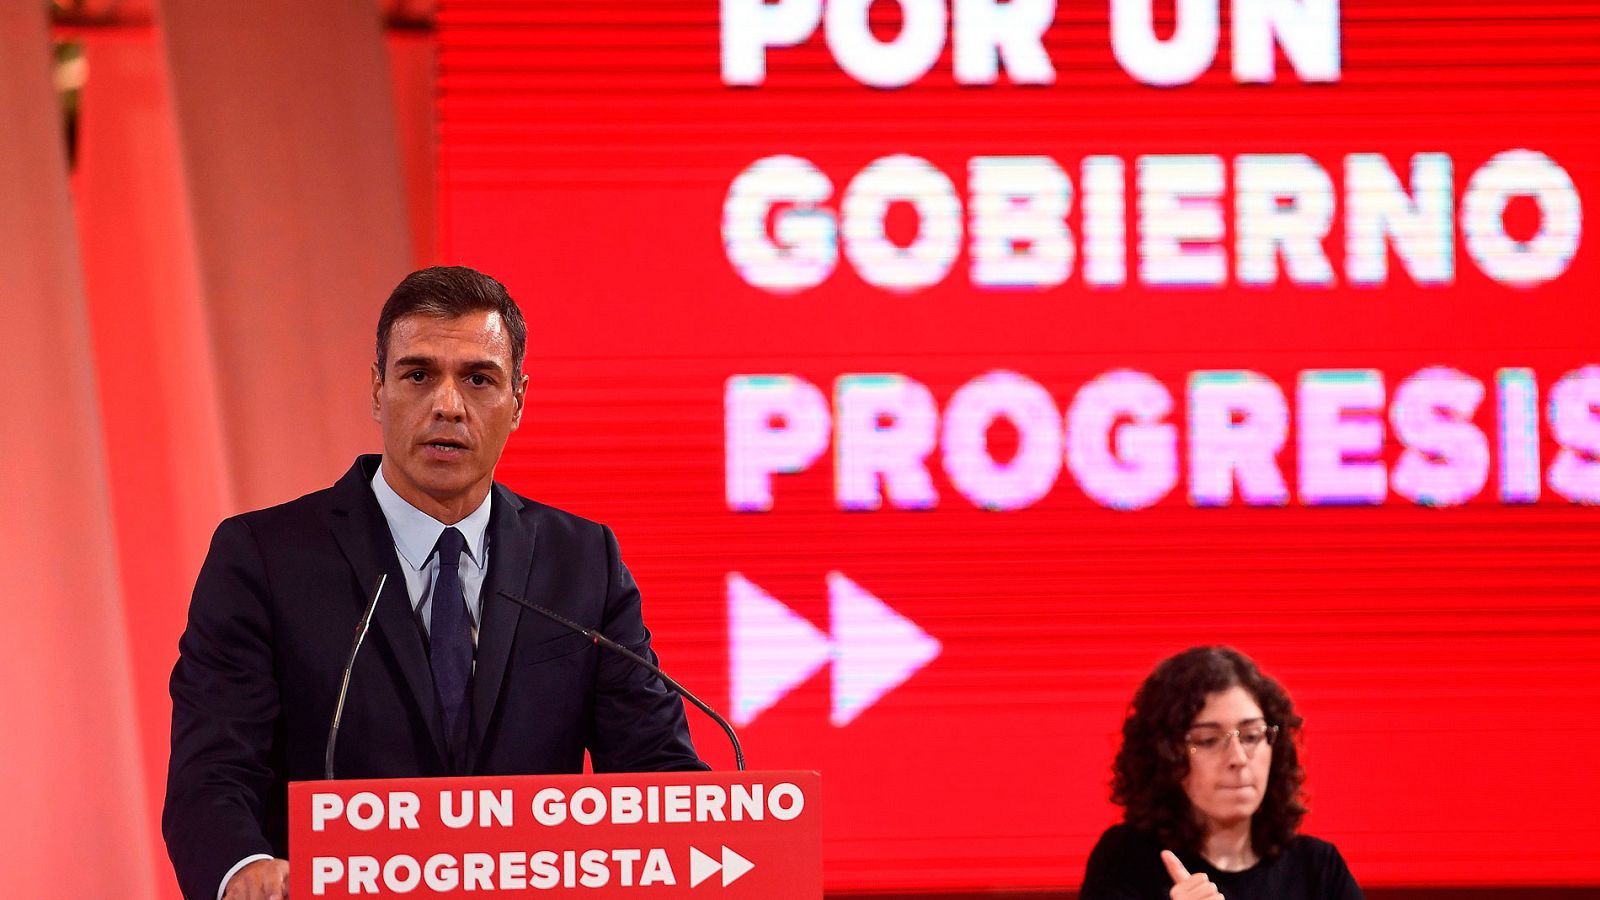 Investidura | Sánchez ofrece a Podemos altos cargos en instituciones relevantes - RTVE.es